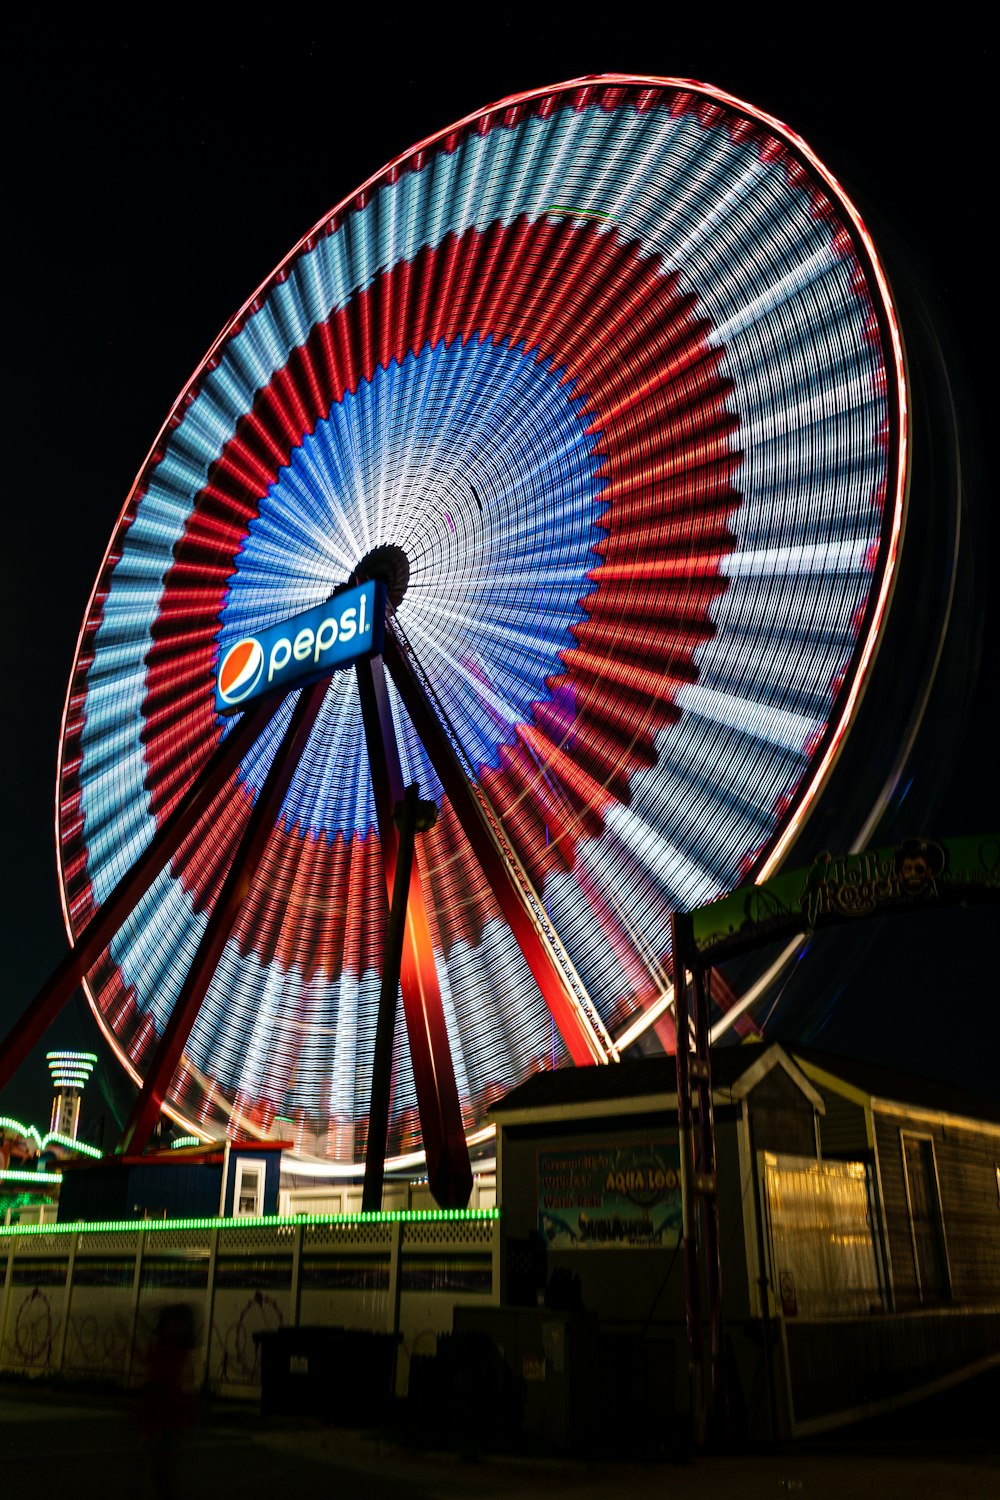 grande roue bleue, rouge et blanche pendant la nuit